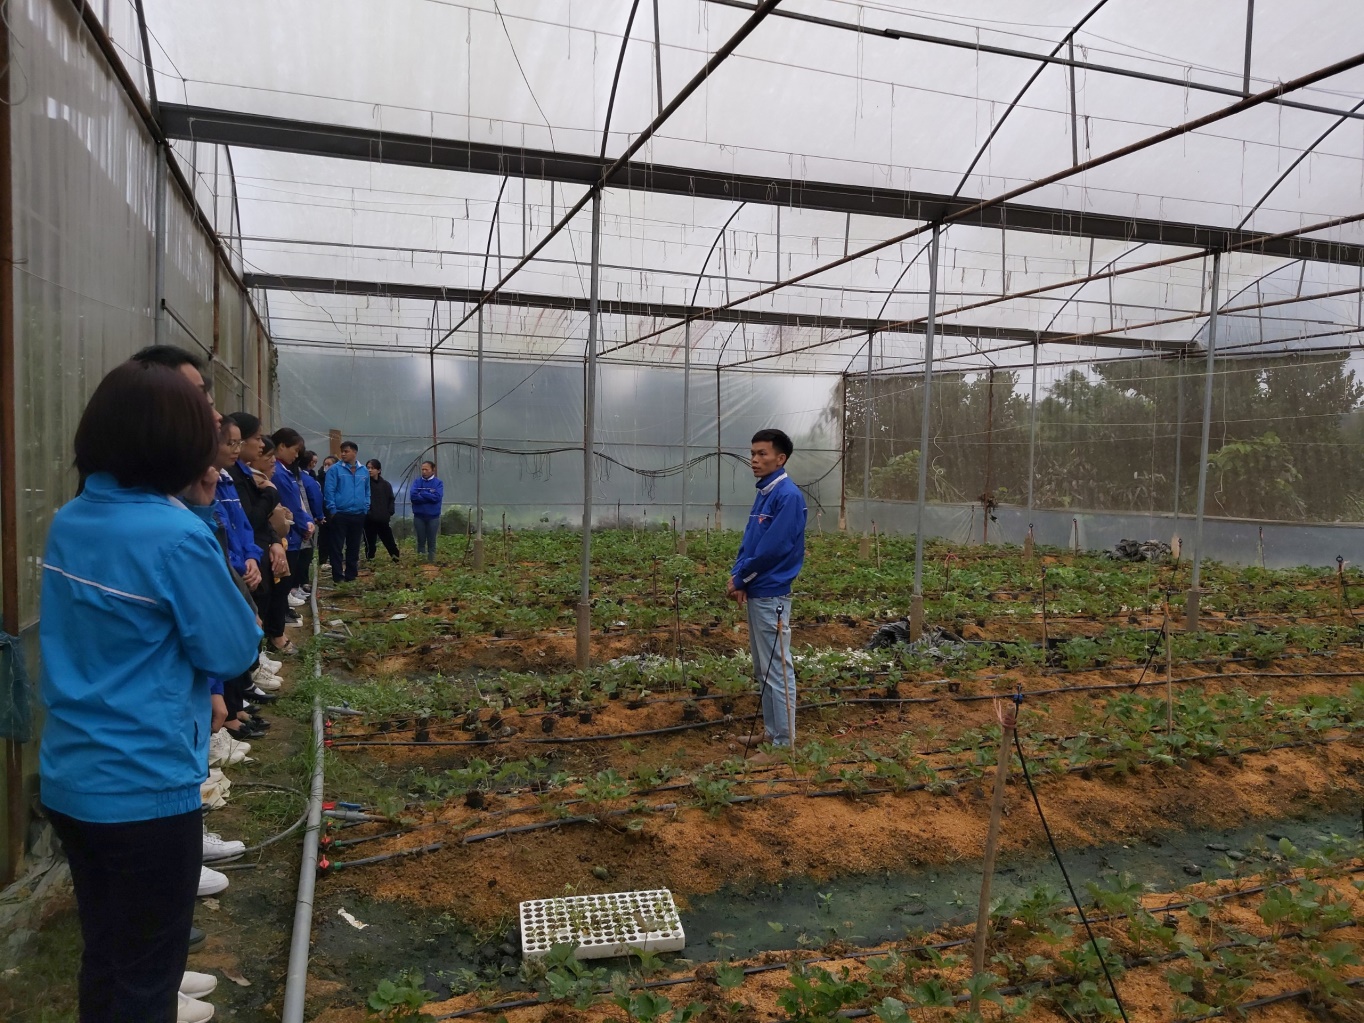 Đồng chí Nguyễn Văn Võ Chủ mô hình giới thiệu và hướng dẫn cho đoàn viên thanh niên kỹ thuật chăm sóc cây trồng